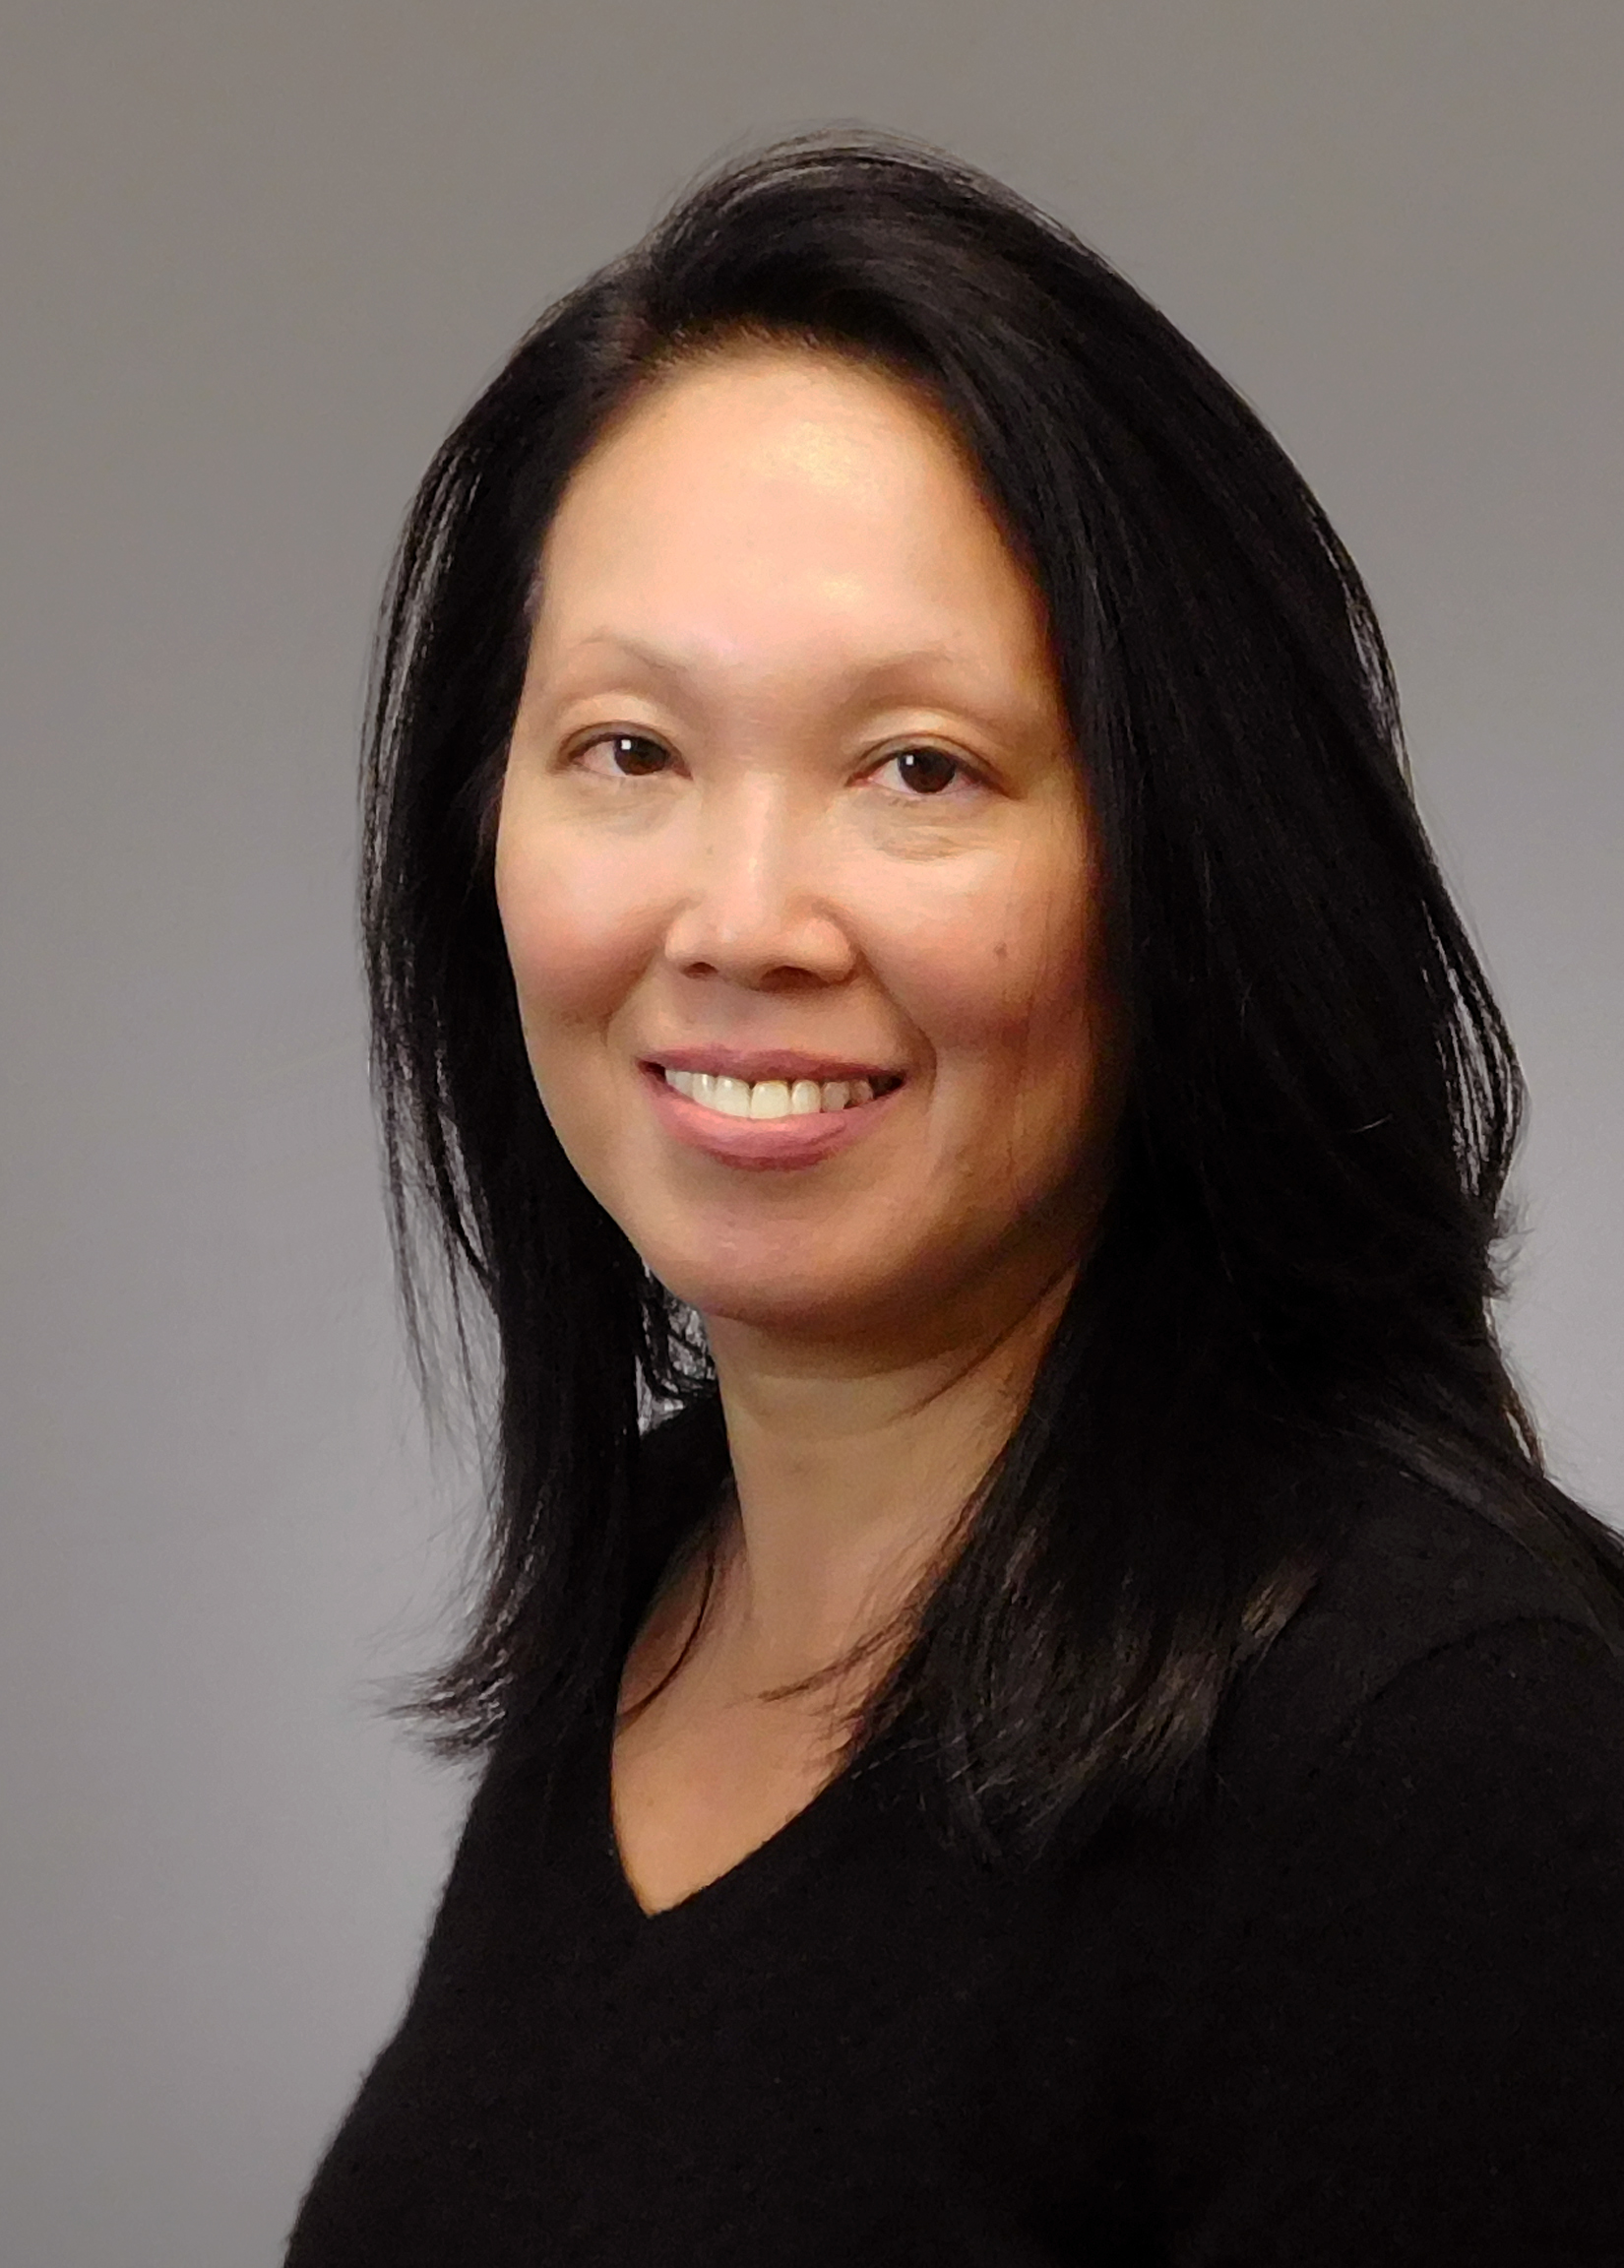 Jane Chen, MD